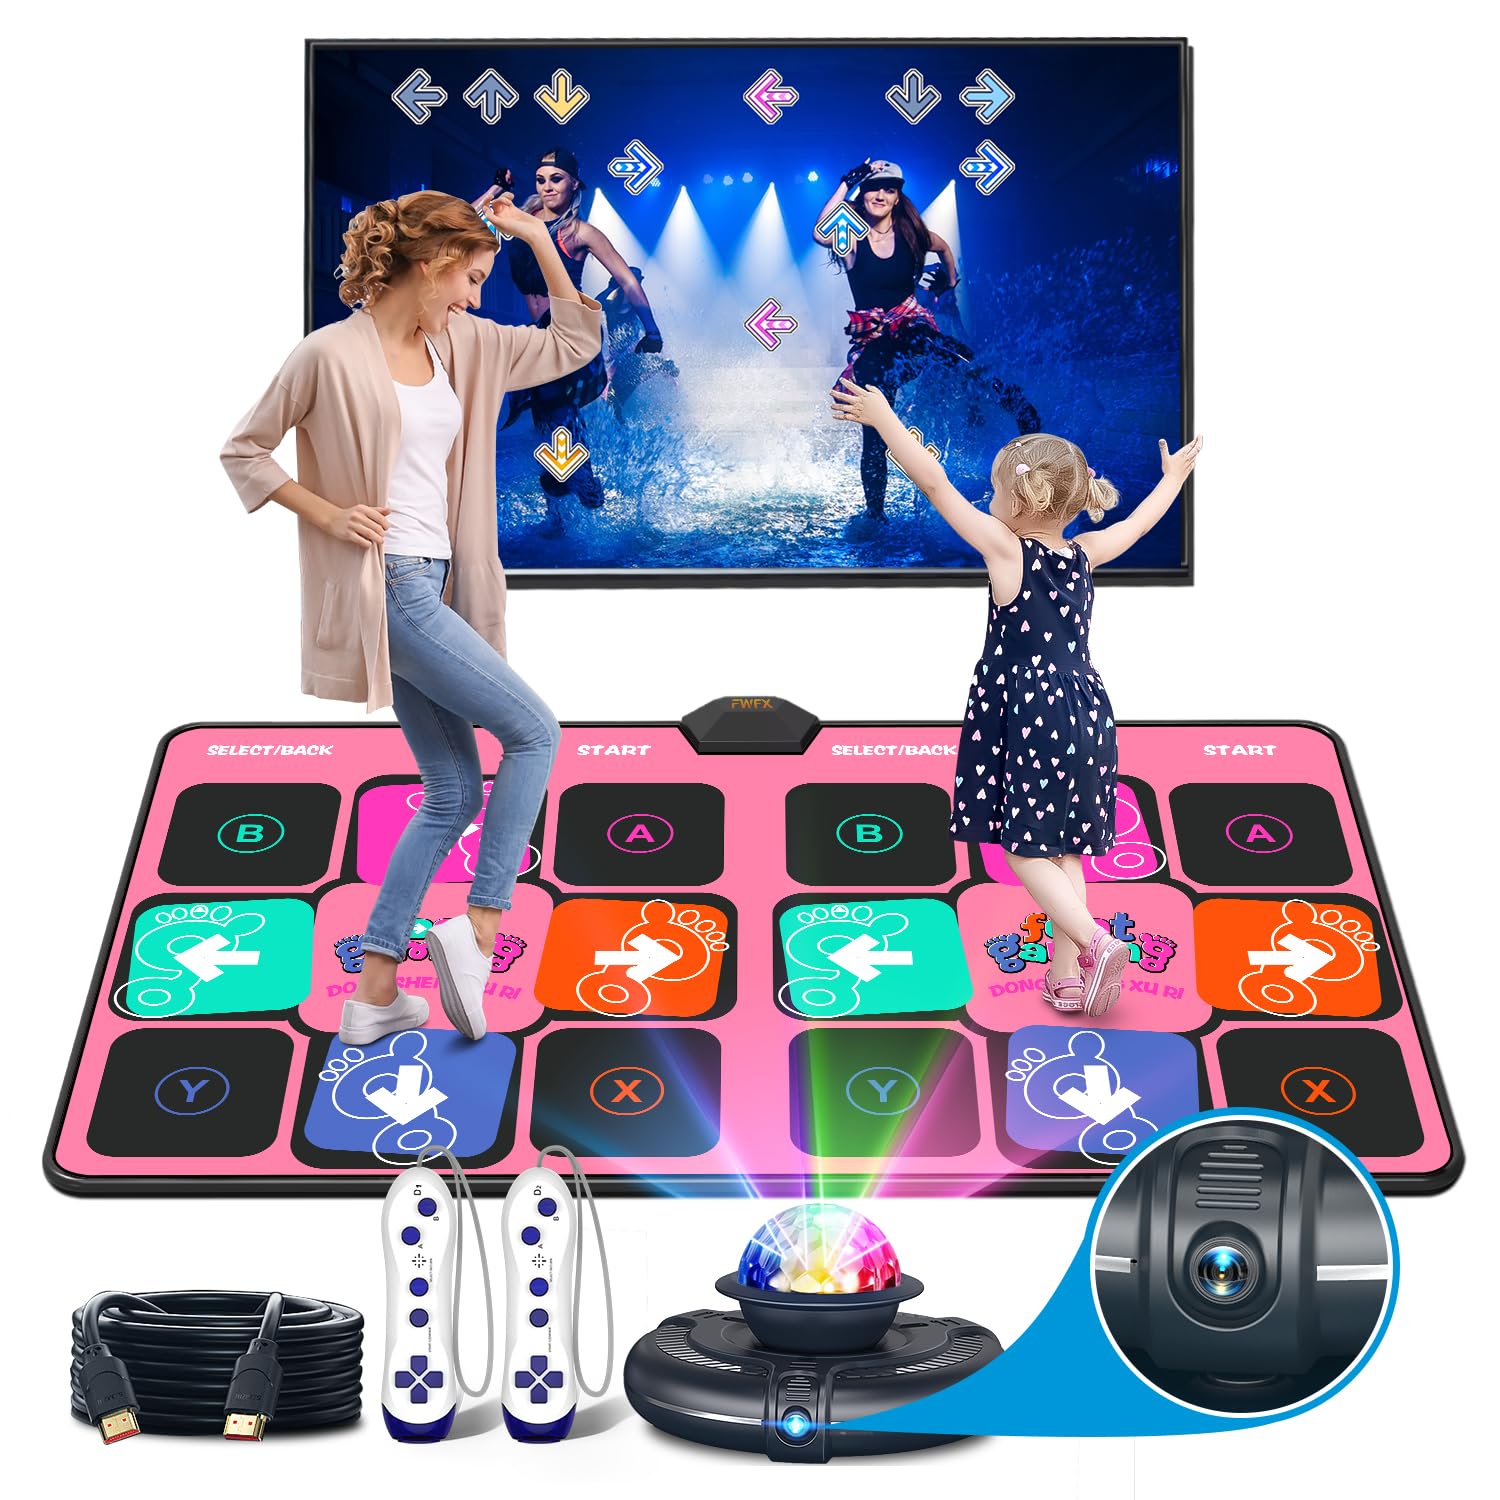 FWFX 电视跳舞垫游戏 - 带高清摄像头的无线音乐电子跳舞垫，双人用户运动健身防滑舞蹈垫跳舞垫适合儿童和成人，送给男孩和女孩的礼物